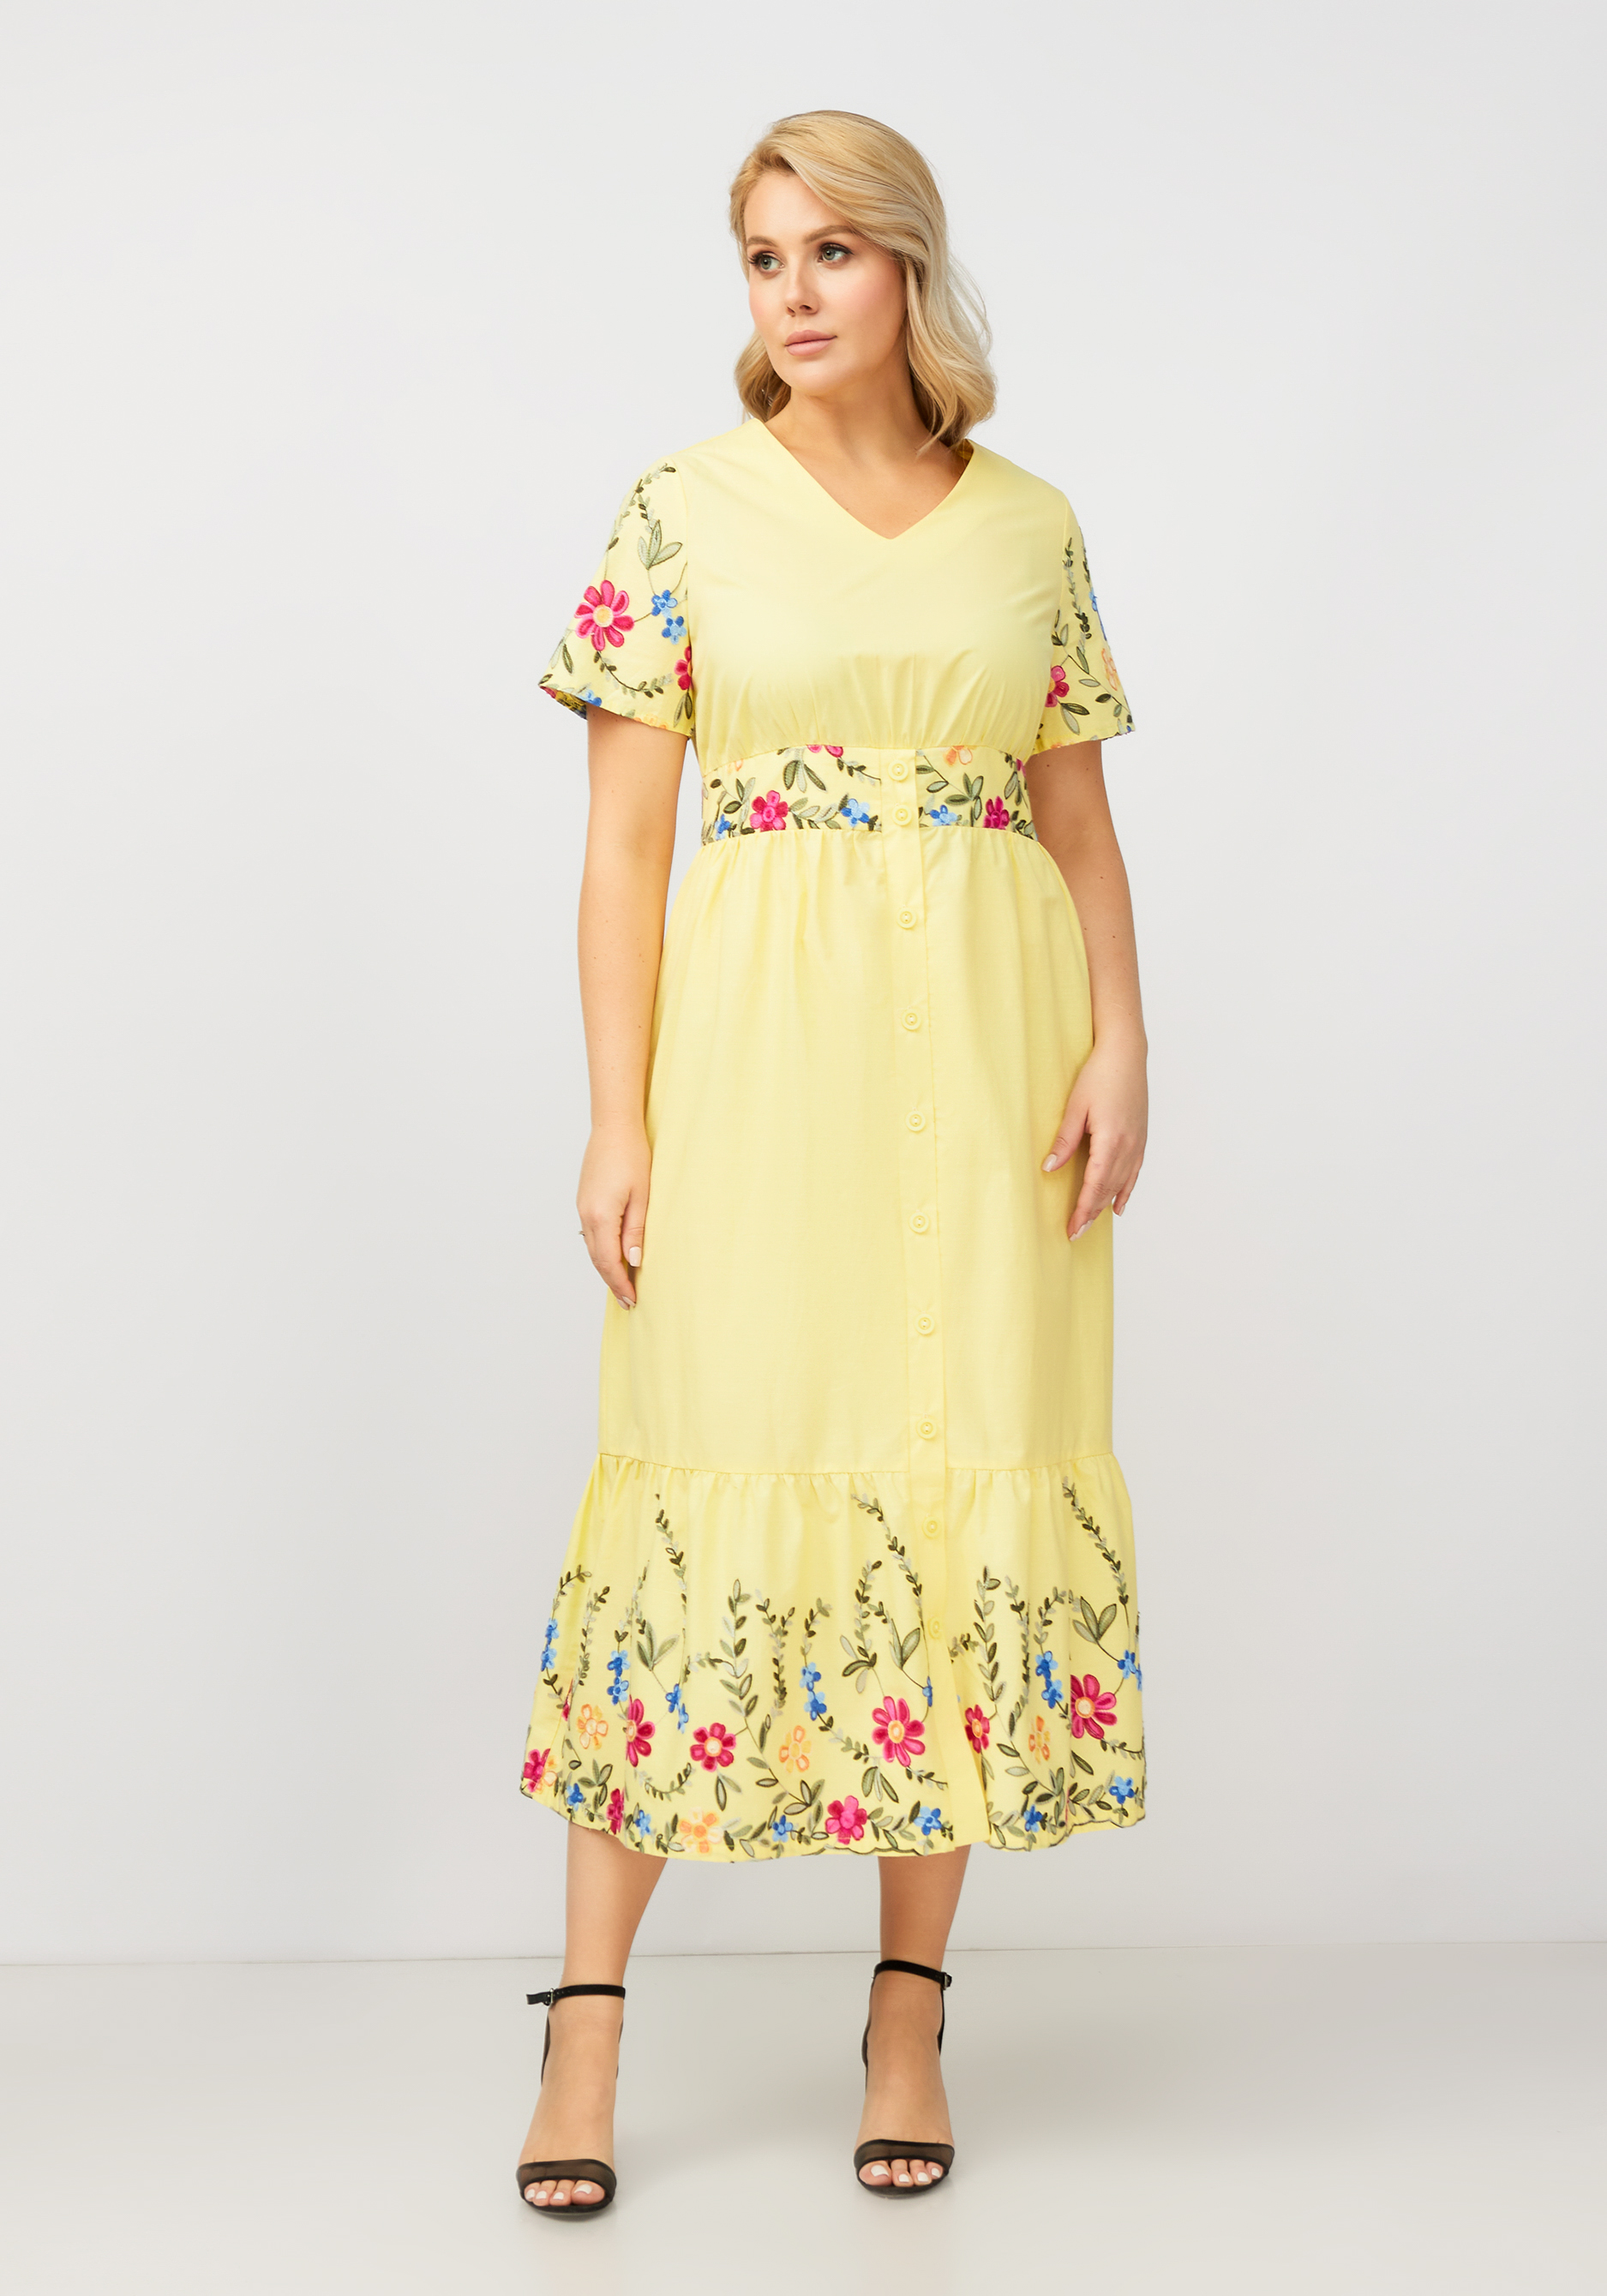 Платье с цветочной вышивкой на пуговицах Bianka Modeno, размер 54 - фото 10